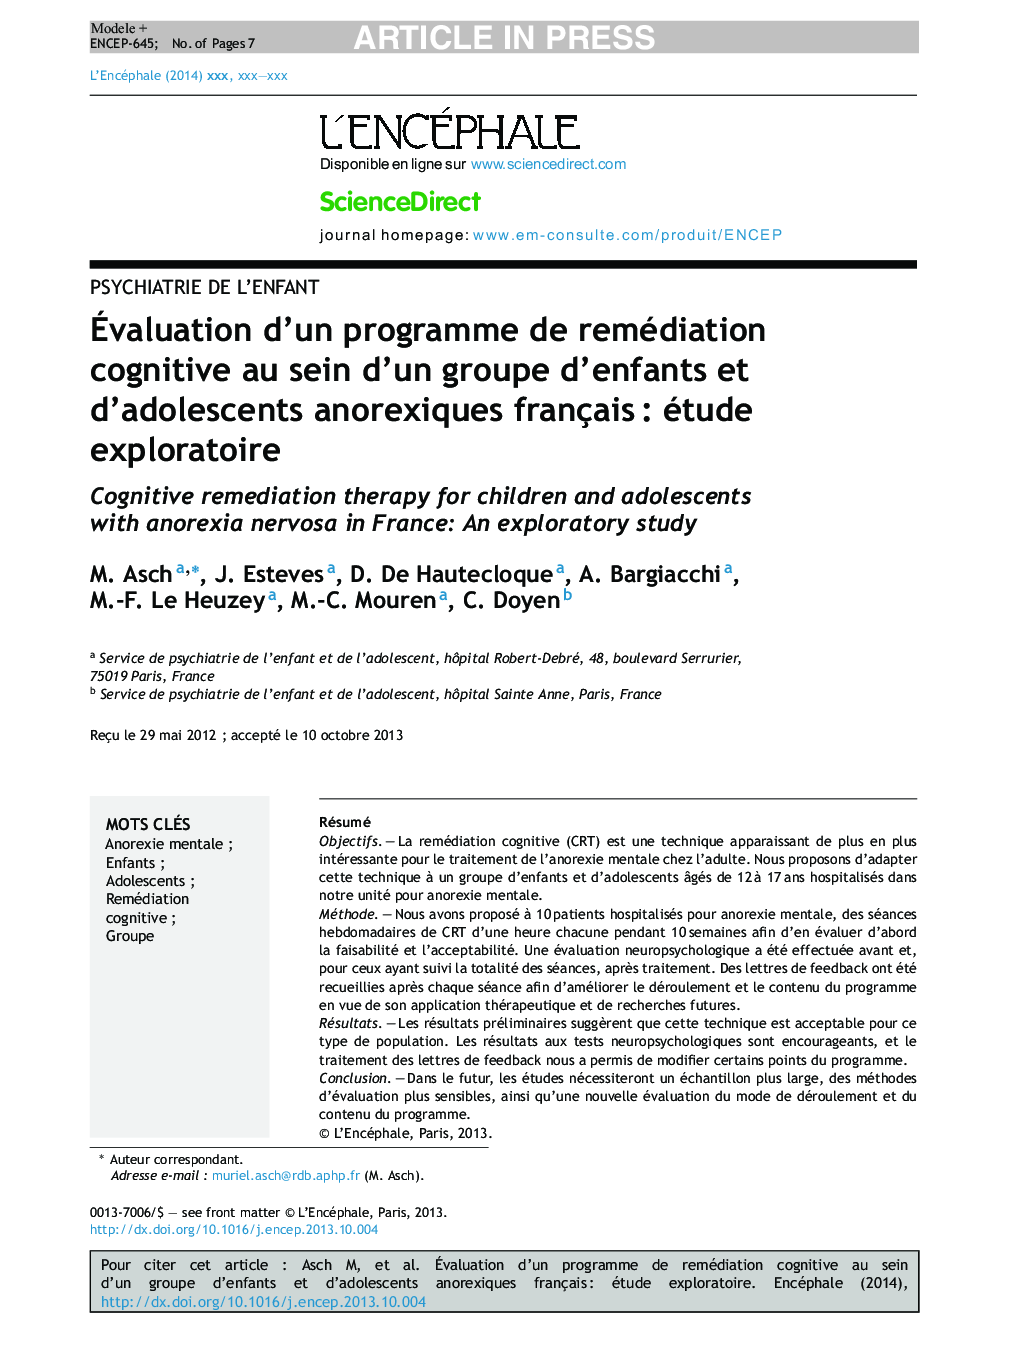 Ãvaluation d'un programme de remédiation cognitive au sein d'un groupe d'enfants et d'adolescents anorexiques françaisÂ : étude exploratoire